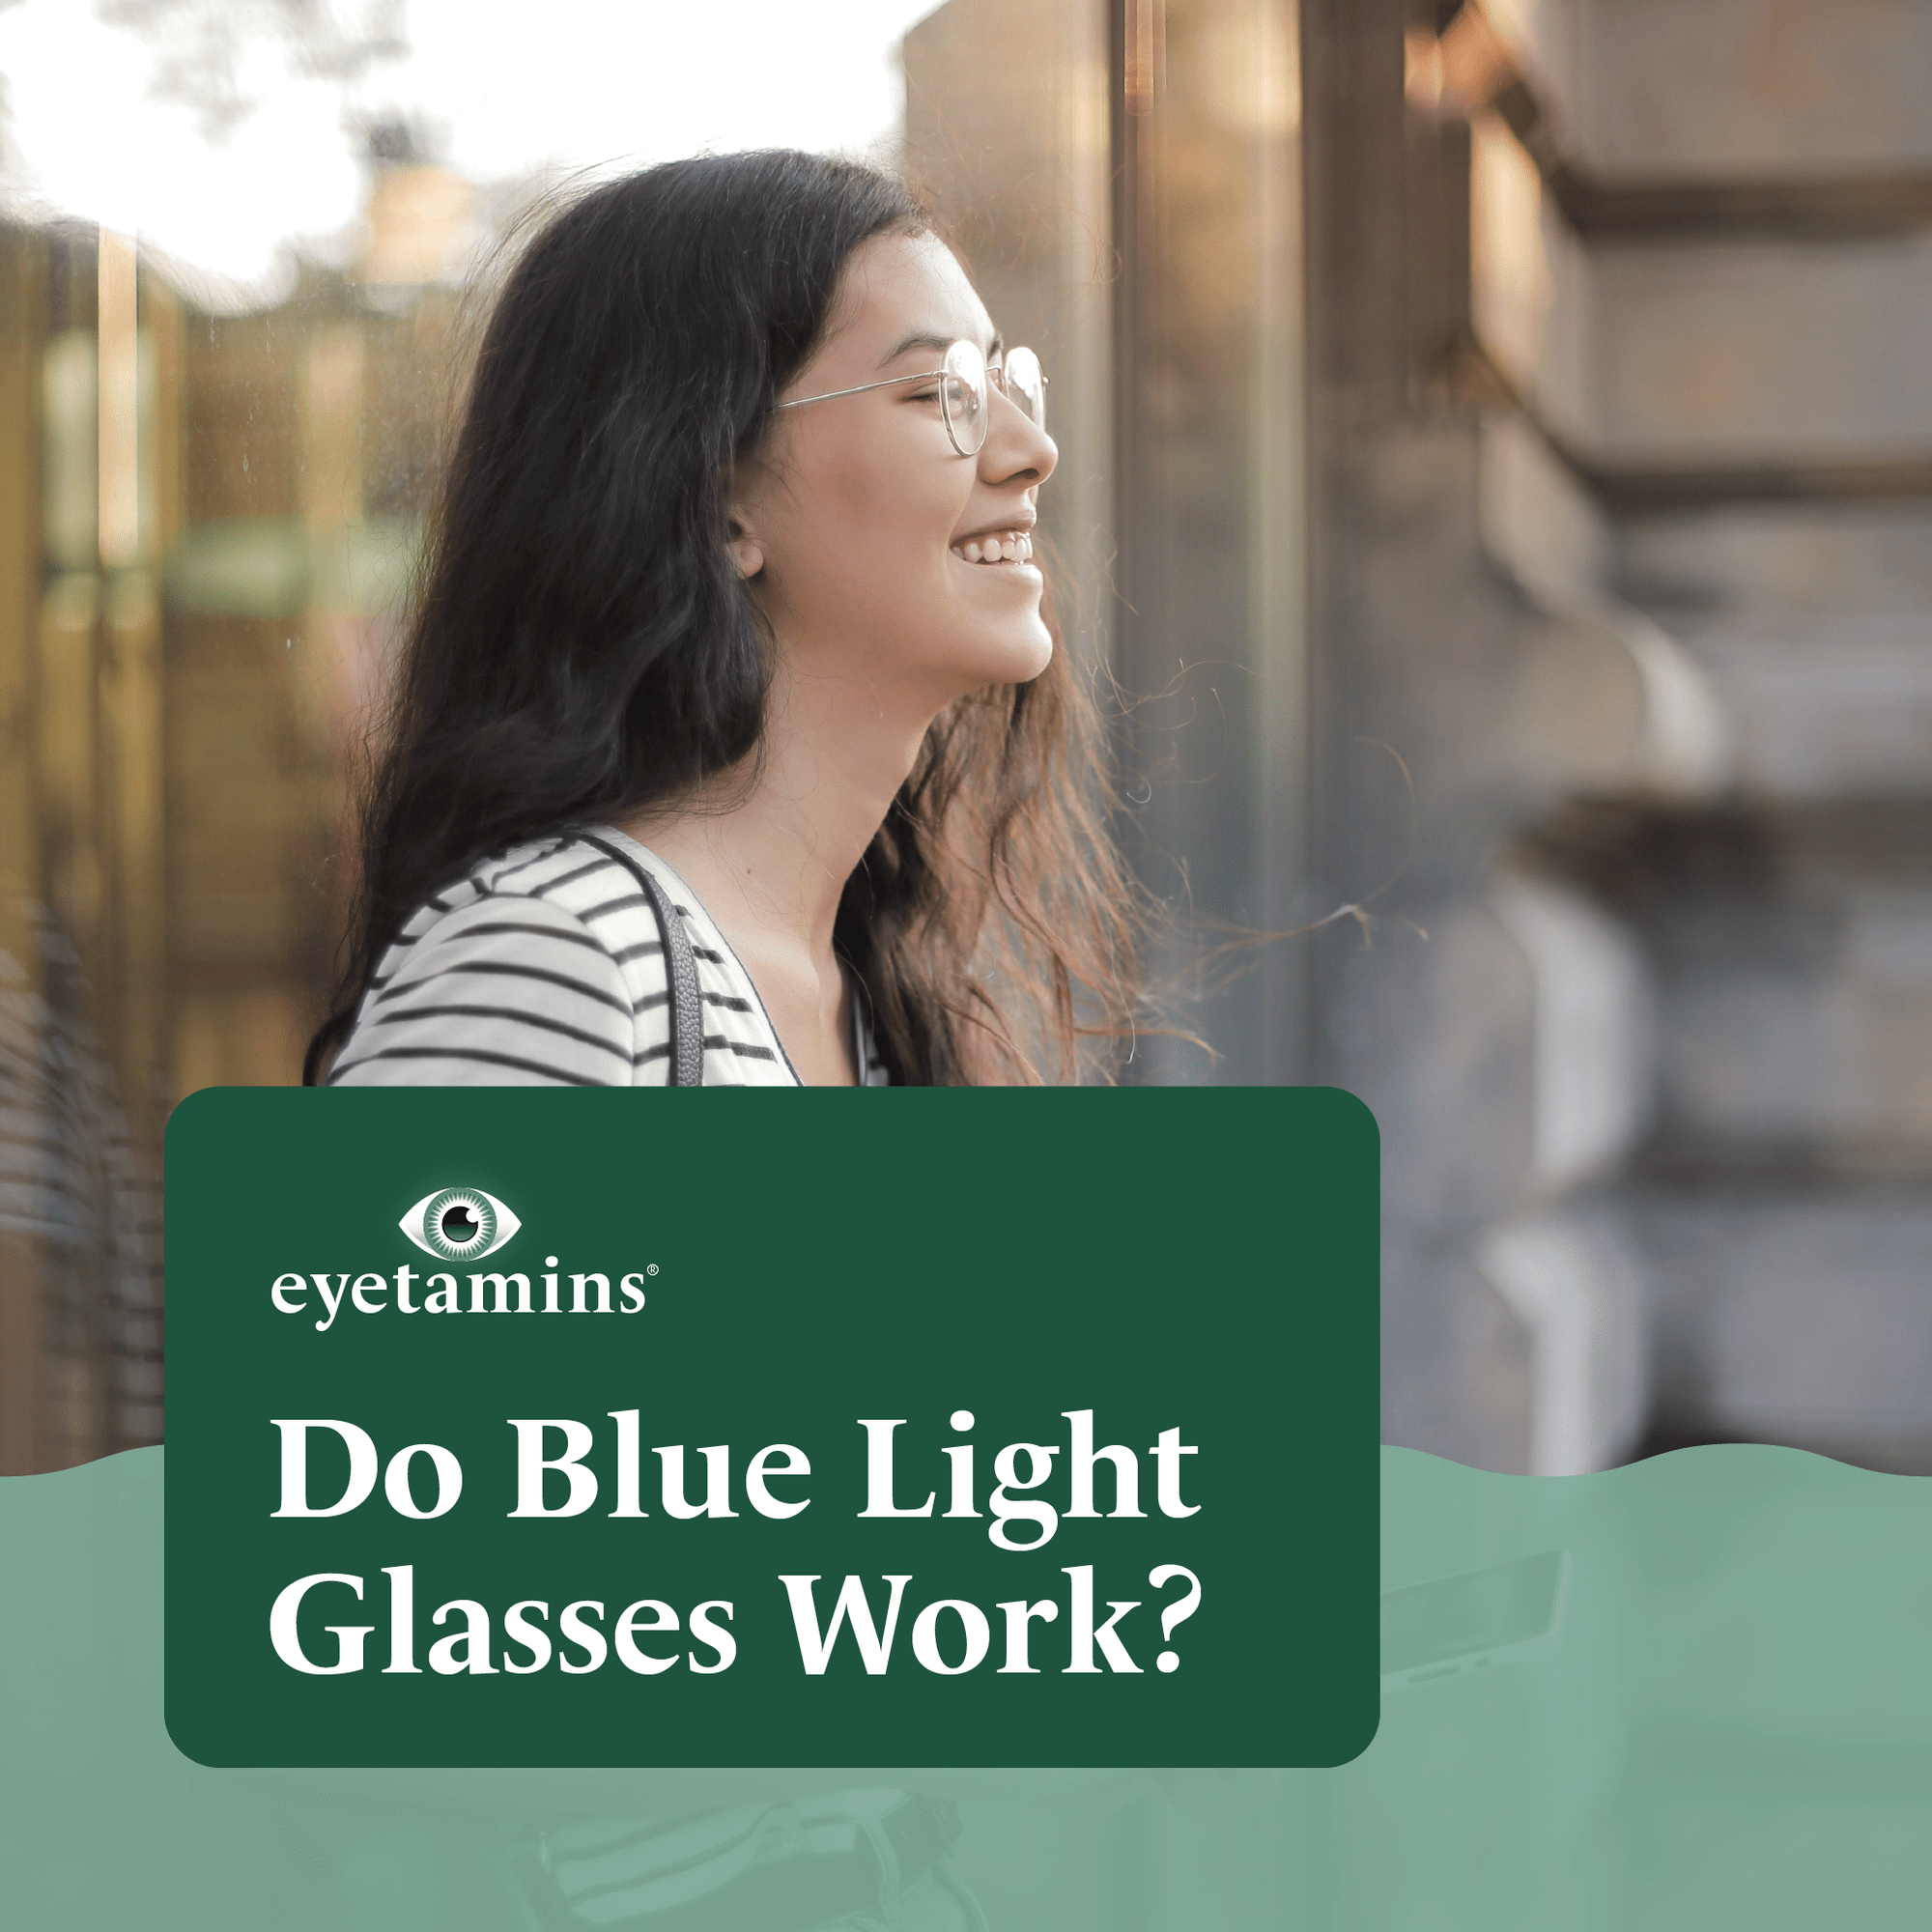 Eyetamins - Do Blue Light Glasses Work?